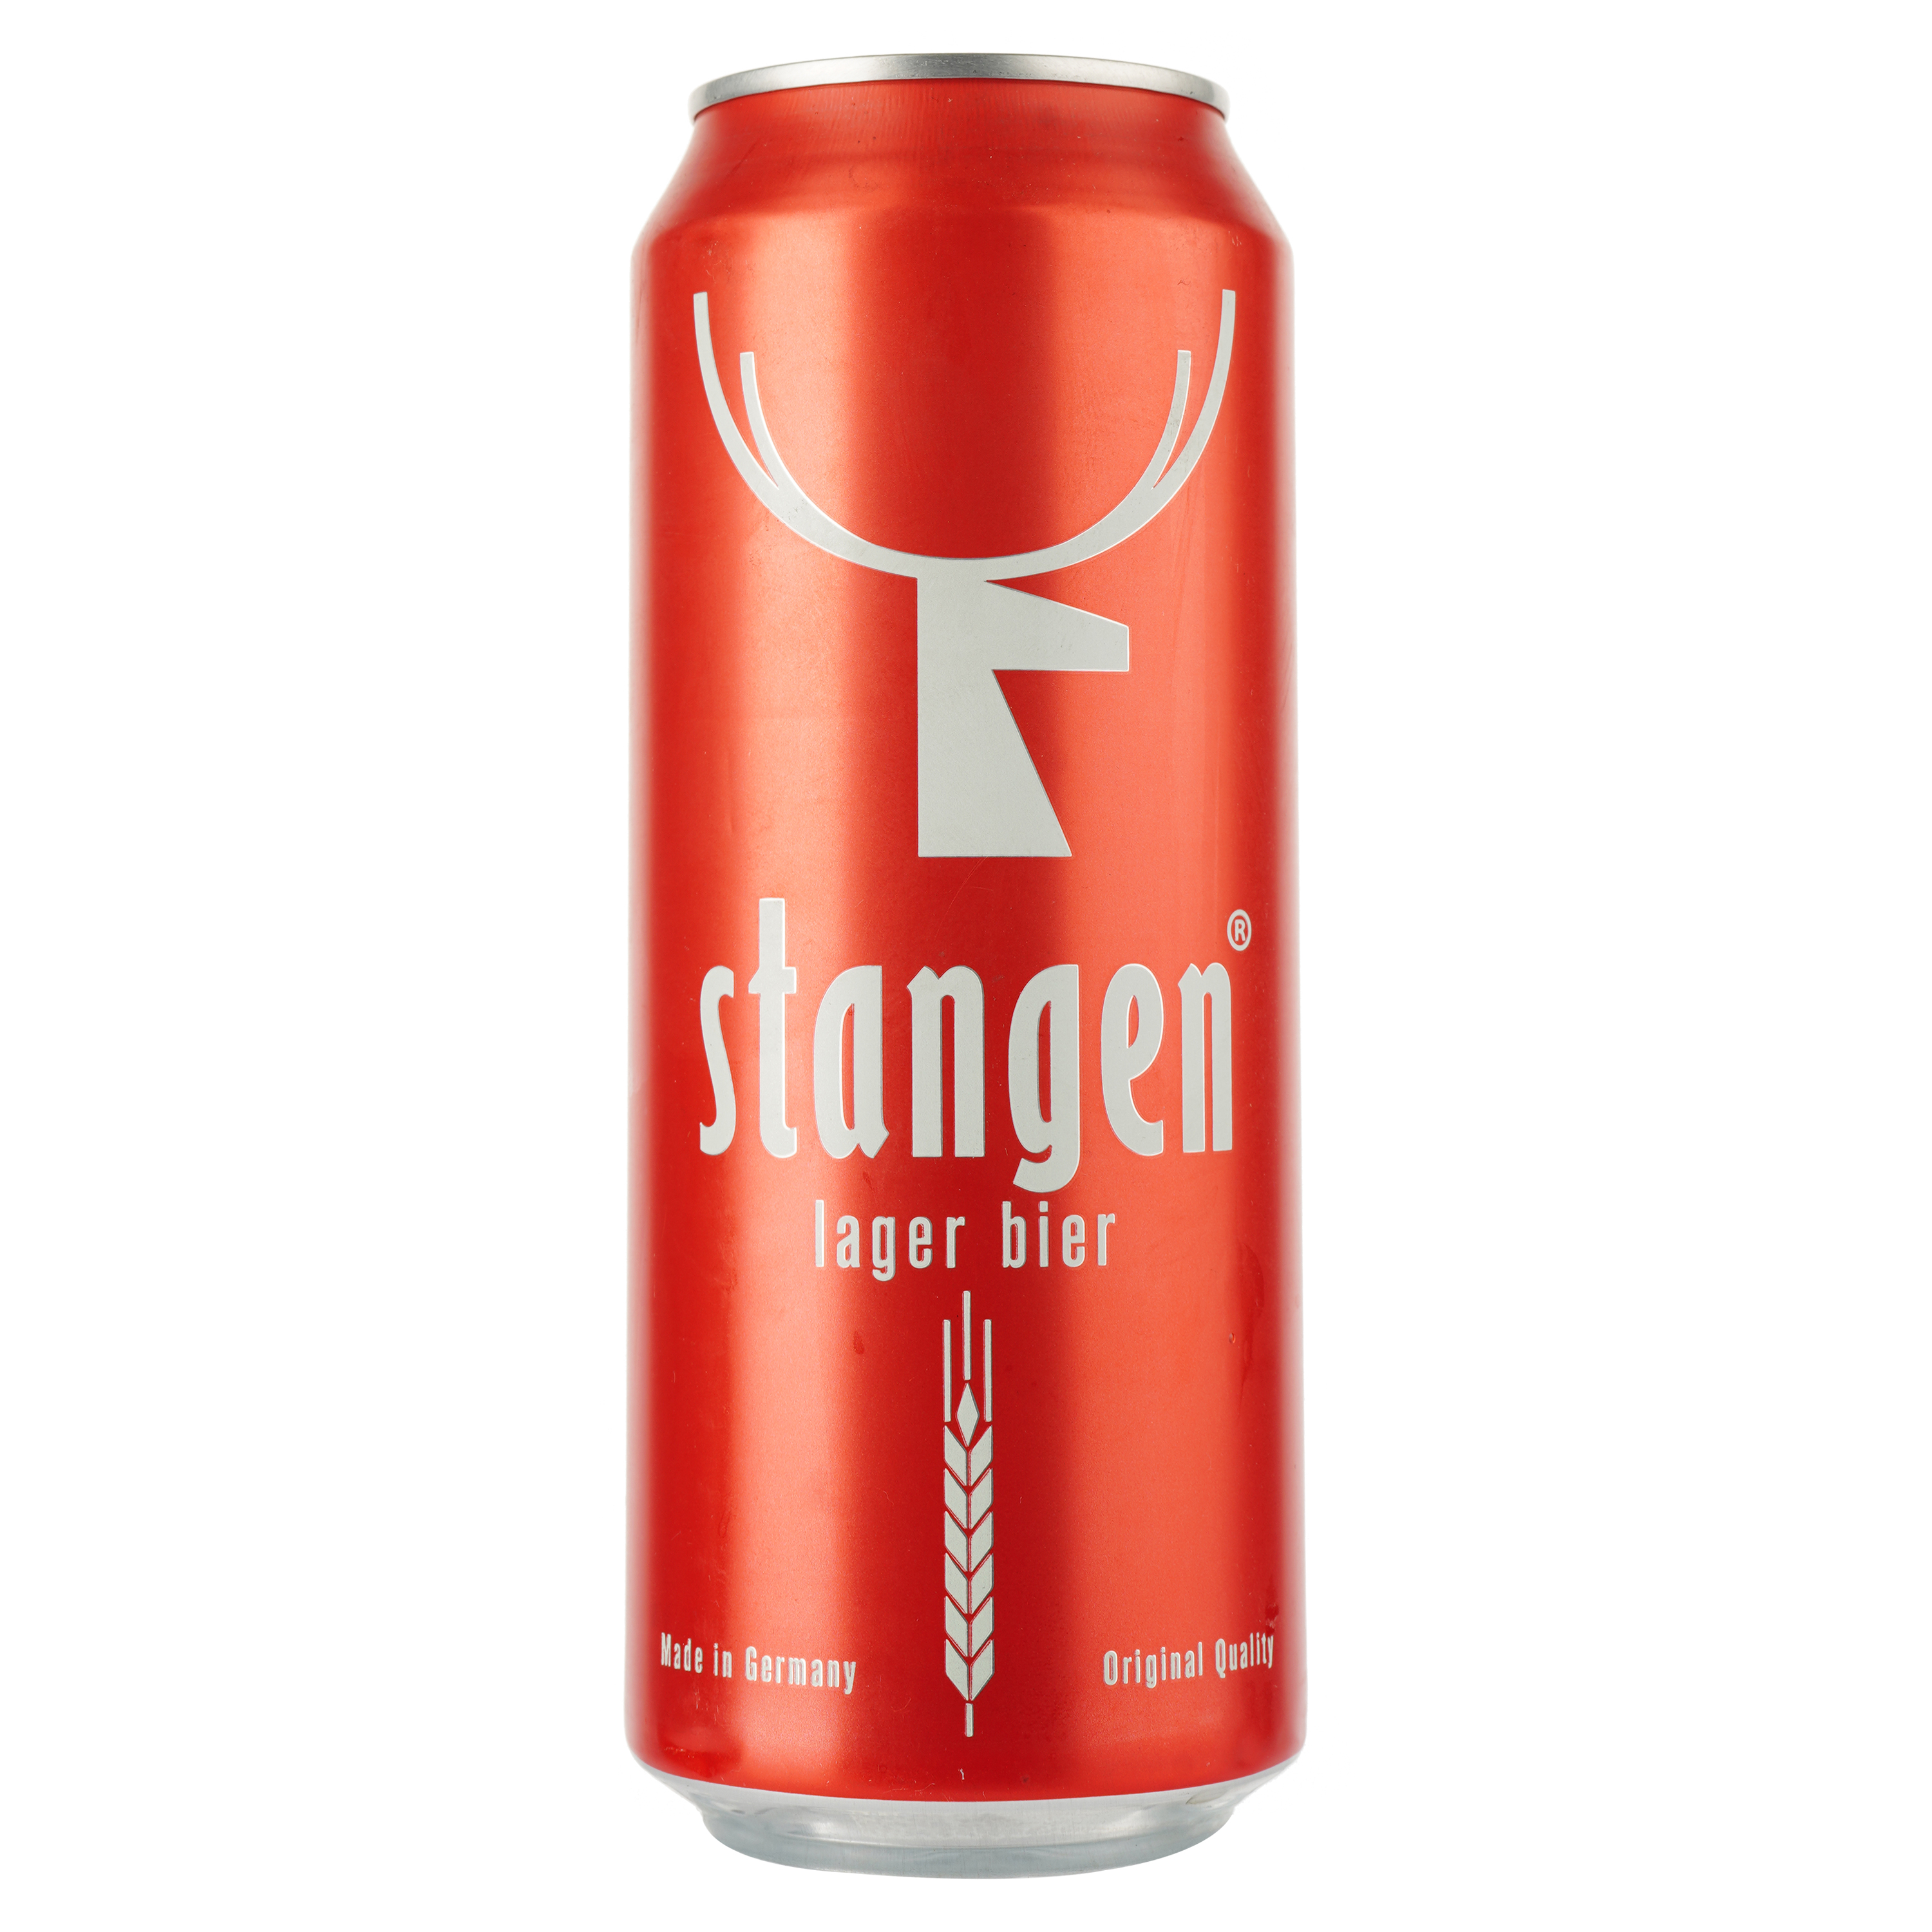 Пиво Stangen Lager bier, светлое, фильтрованное, 5,4%, ж/б, 0,5 л - фото 1